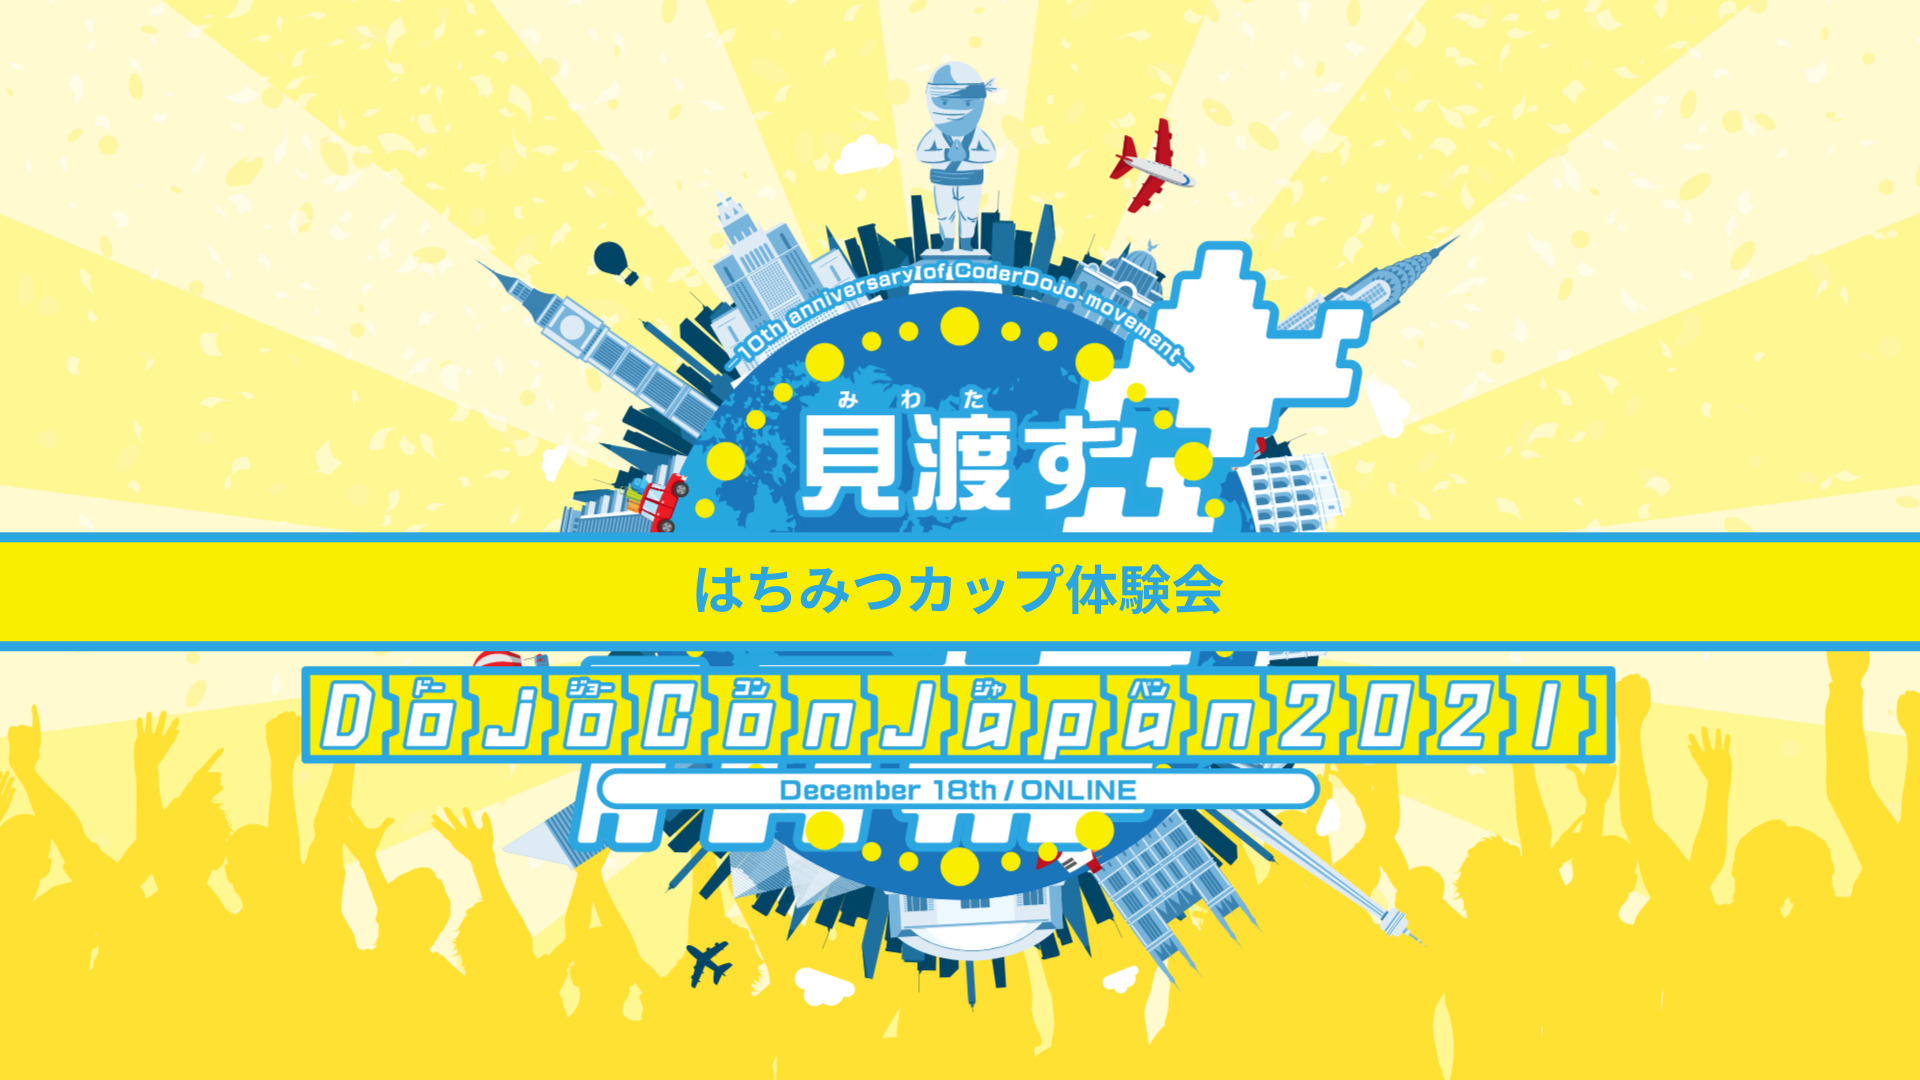 はちみつカップ DojoCon Japan 2021 特別体験会 のサムネイル画像